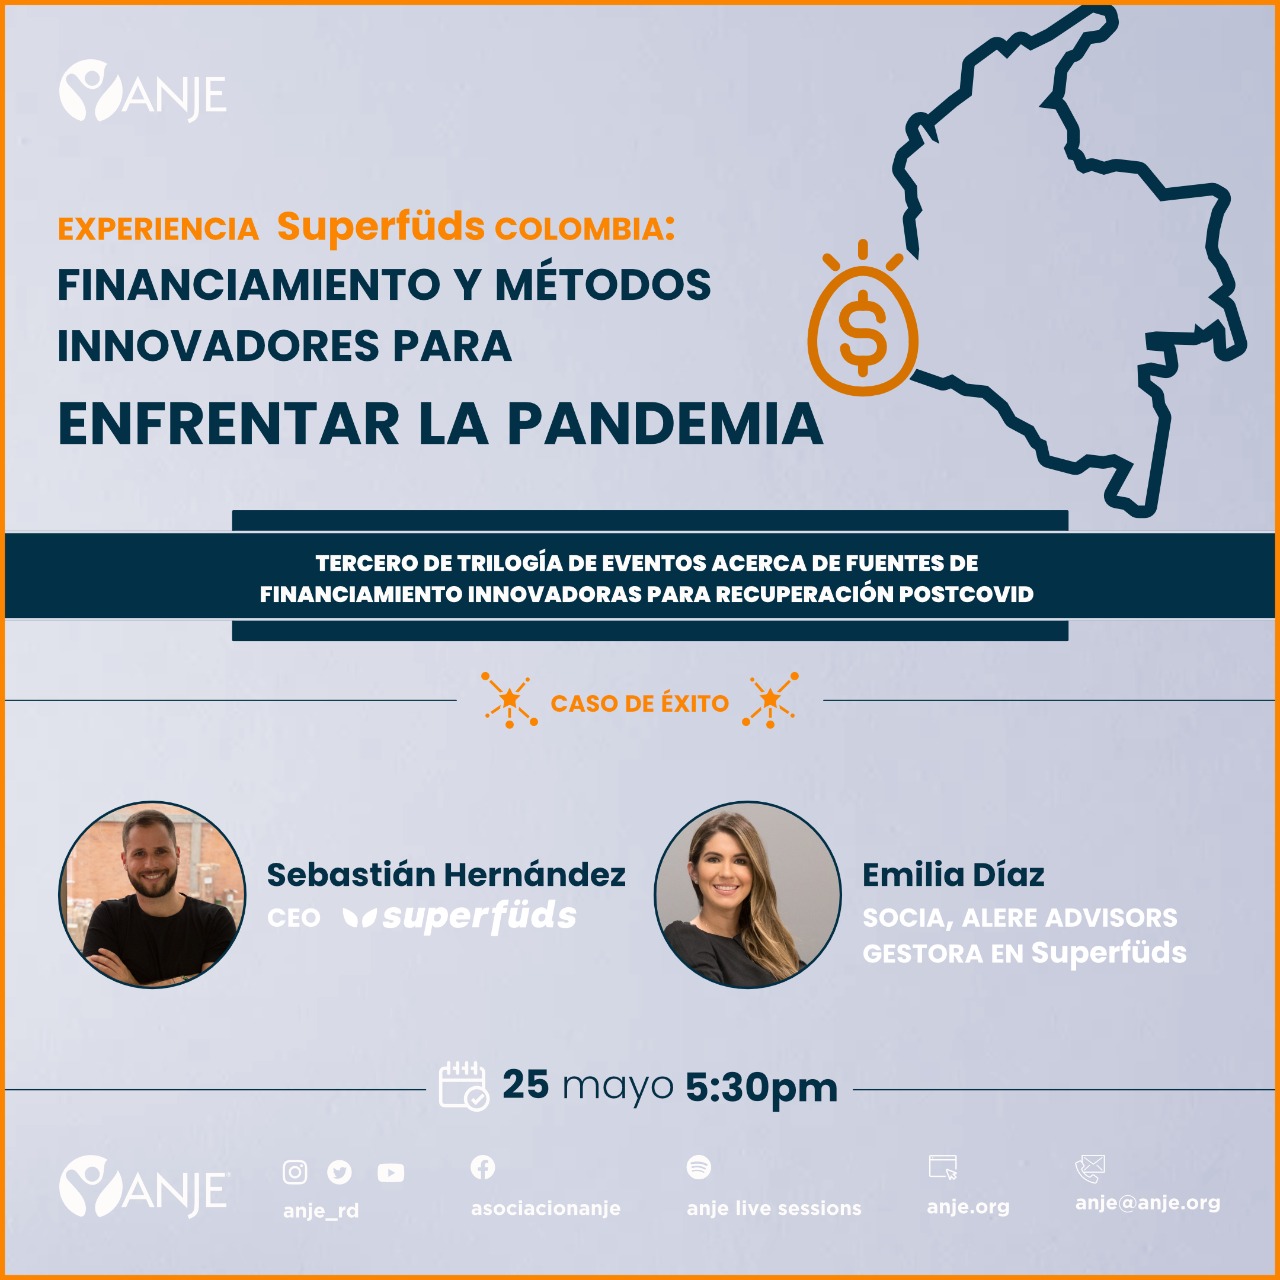 ANJE anuncia encuentro Experiencia Superfuds Colombia financiamiento y metodos innovadores